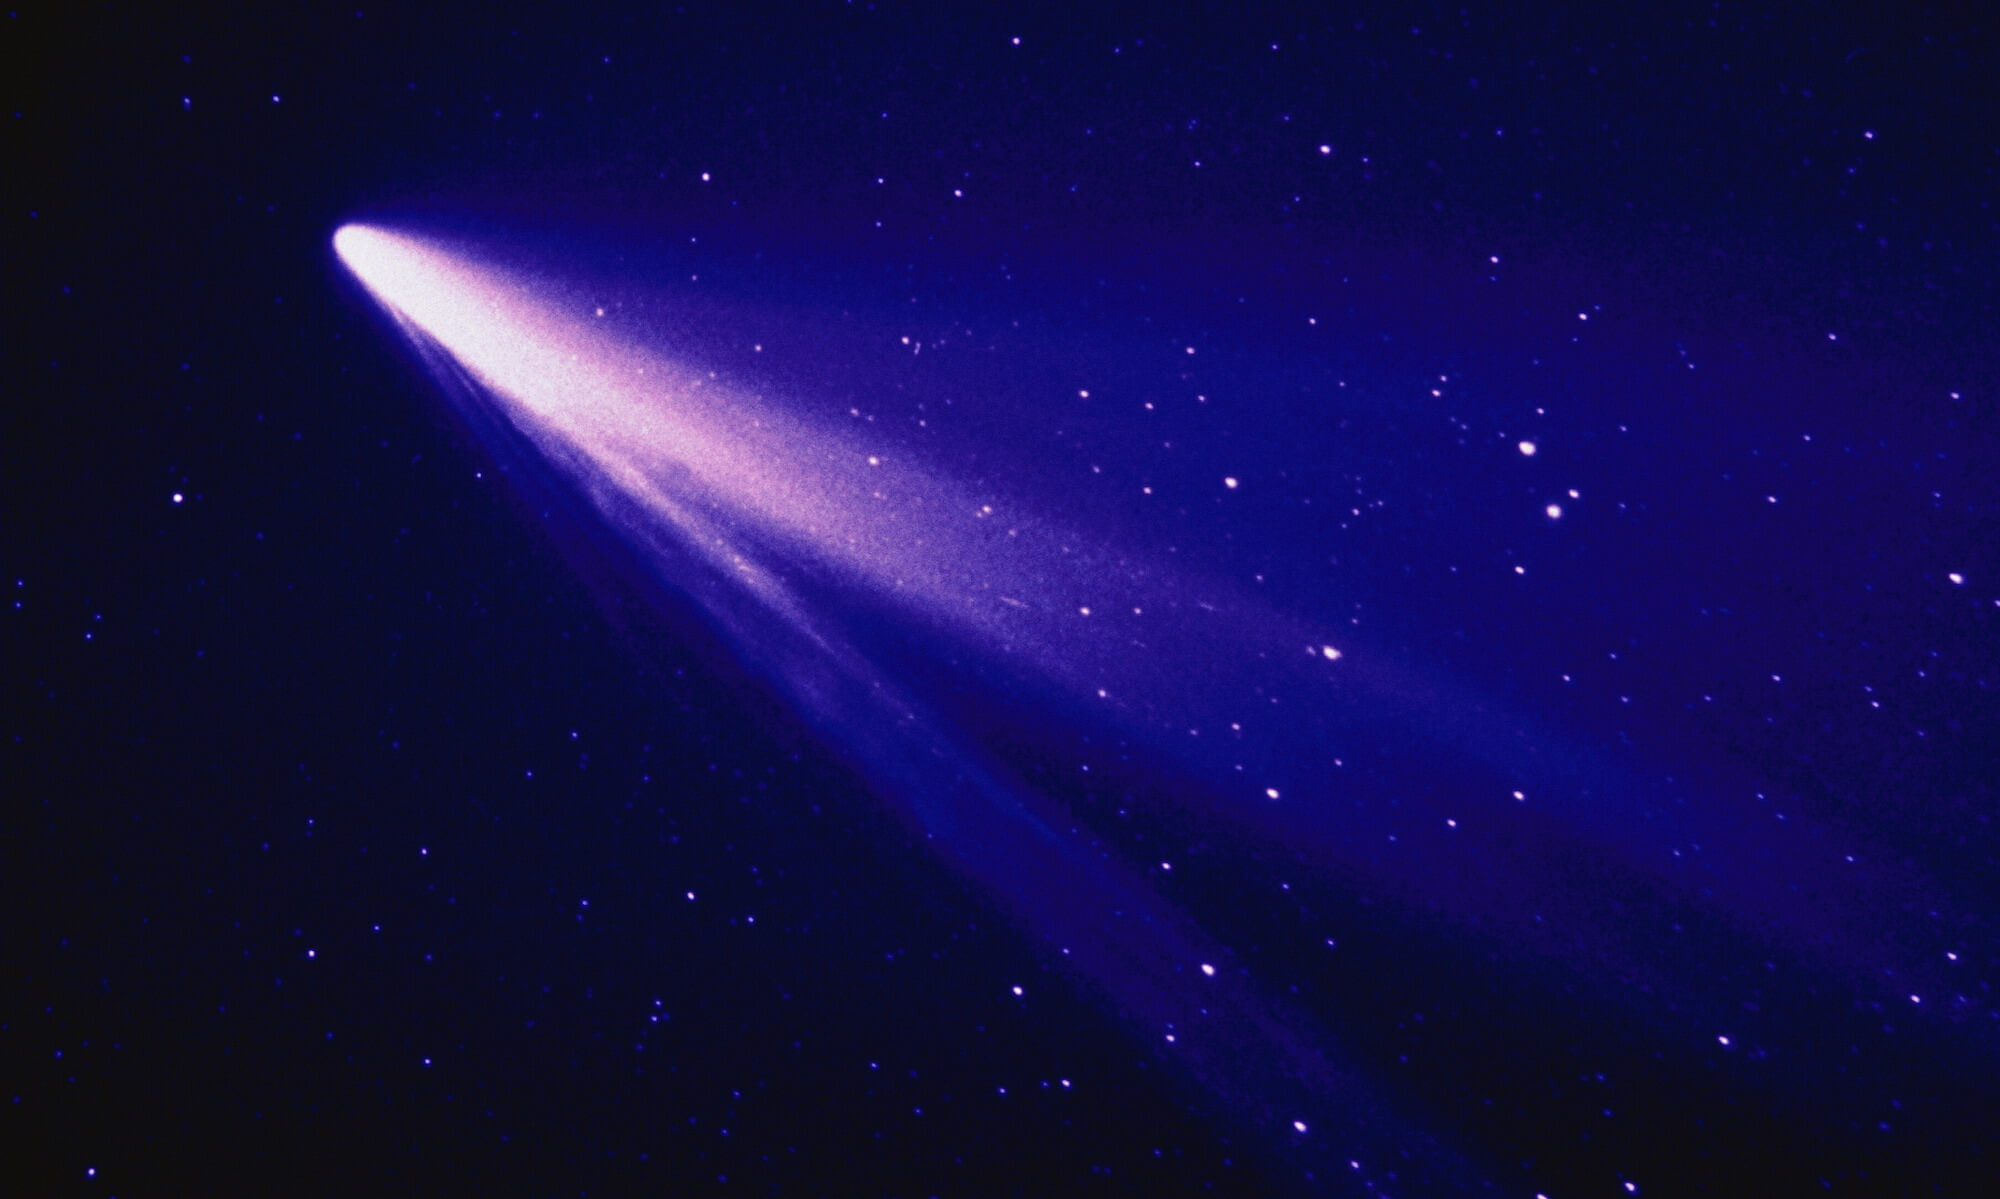 A comet streaking across a starry sky